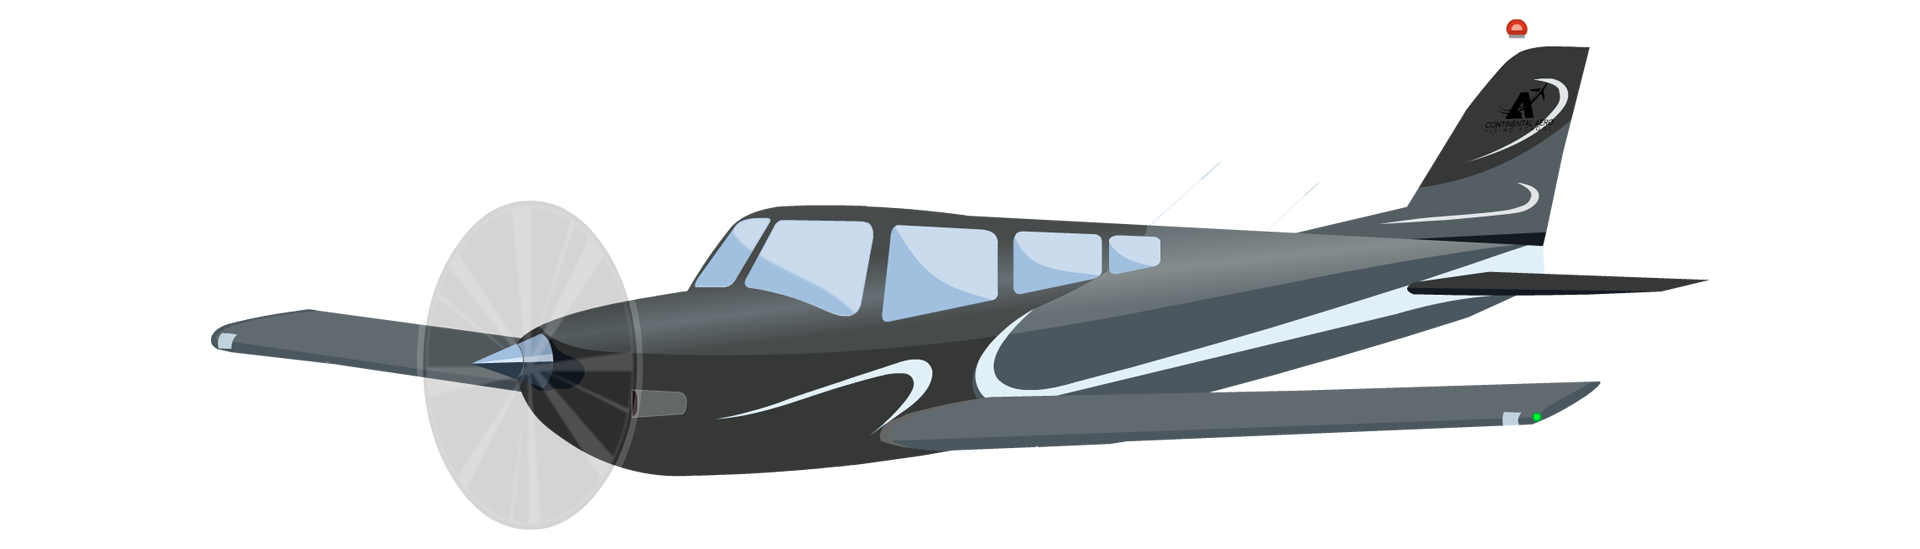 Cherokee Aircraft